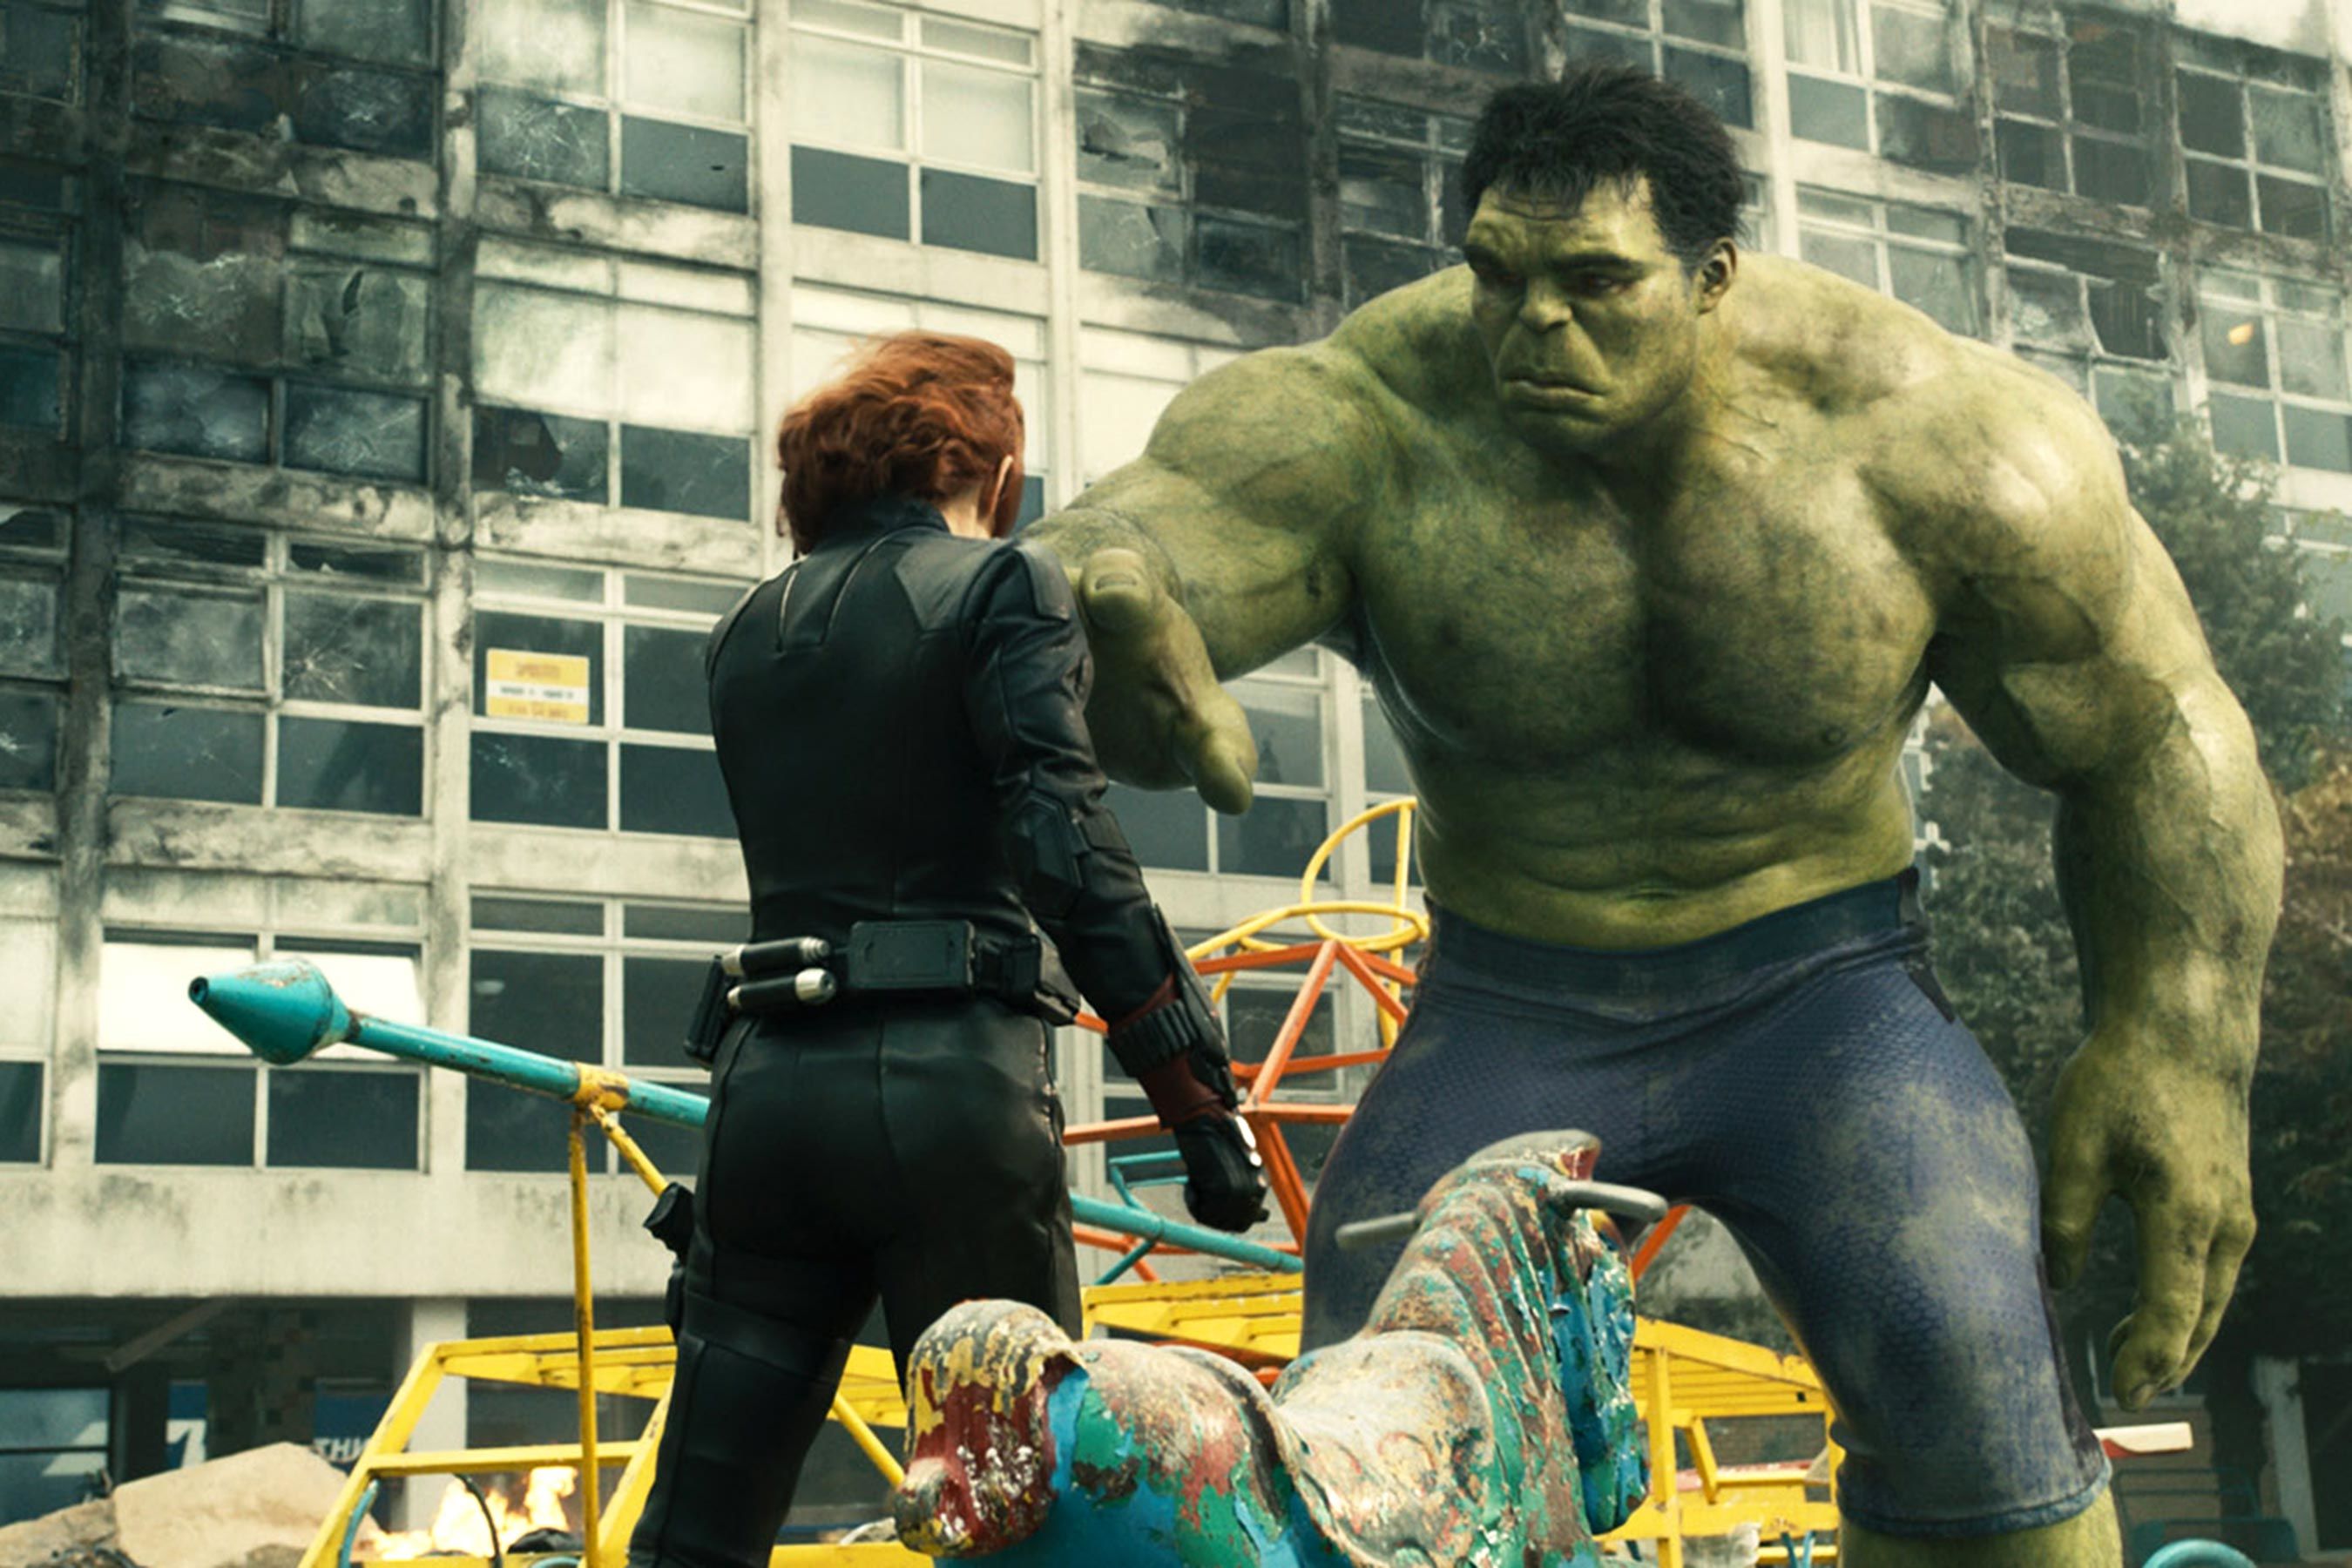 Hulk Avengers: Endgame